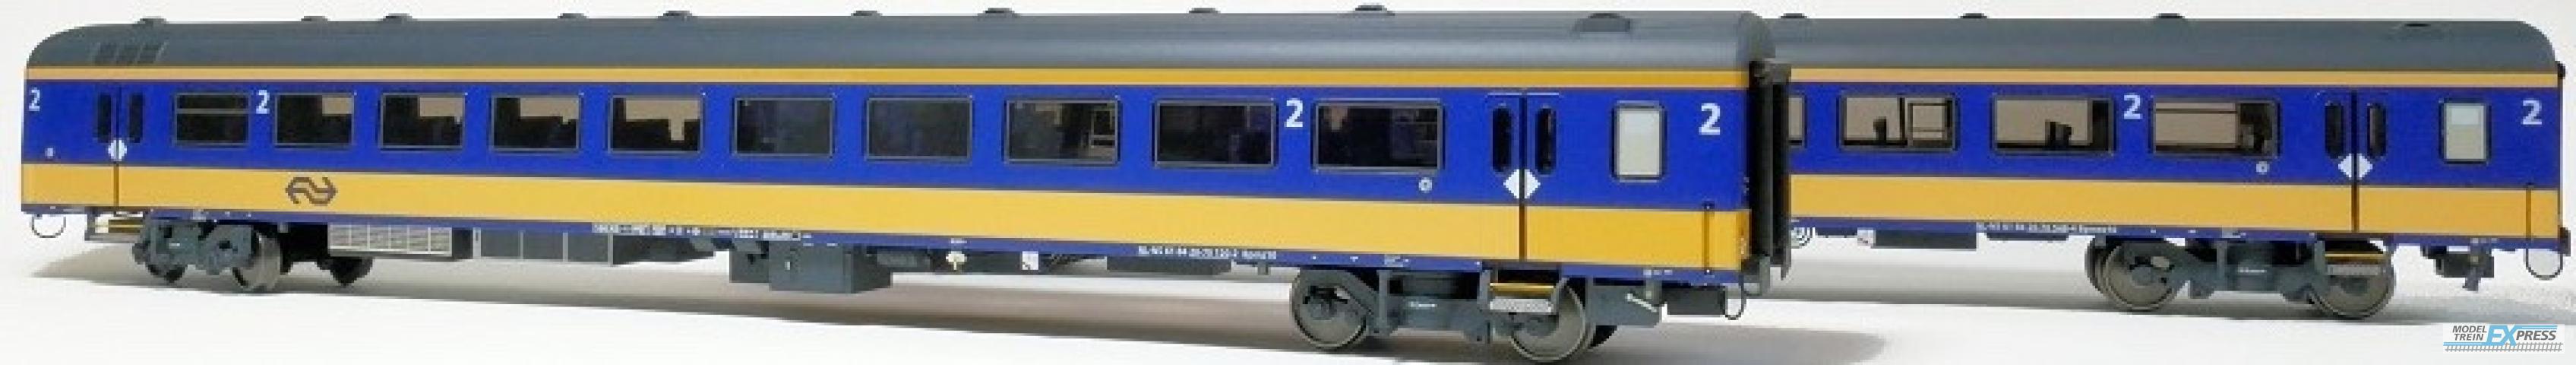 Exact-train 11000 2er-Set NS ICRm Den Haag -Eindhoven für den Inlandseinsatz Endwagen Bpmez10 und Reisezugwagen Bpmz10 ( Neue Farbe Gelb / Blau), Ep. VI